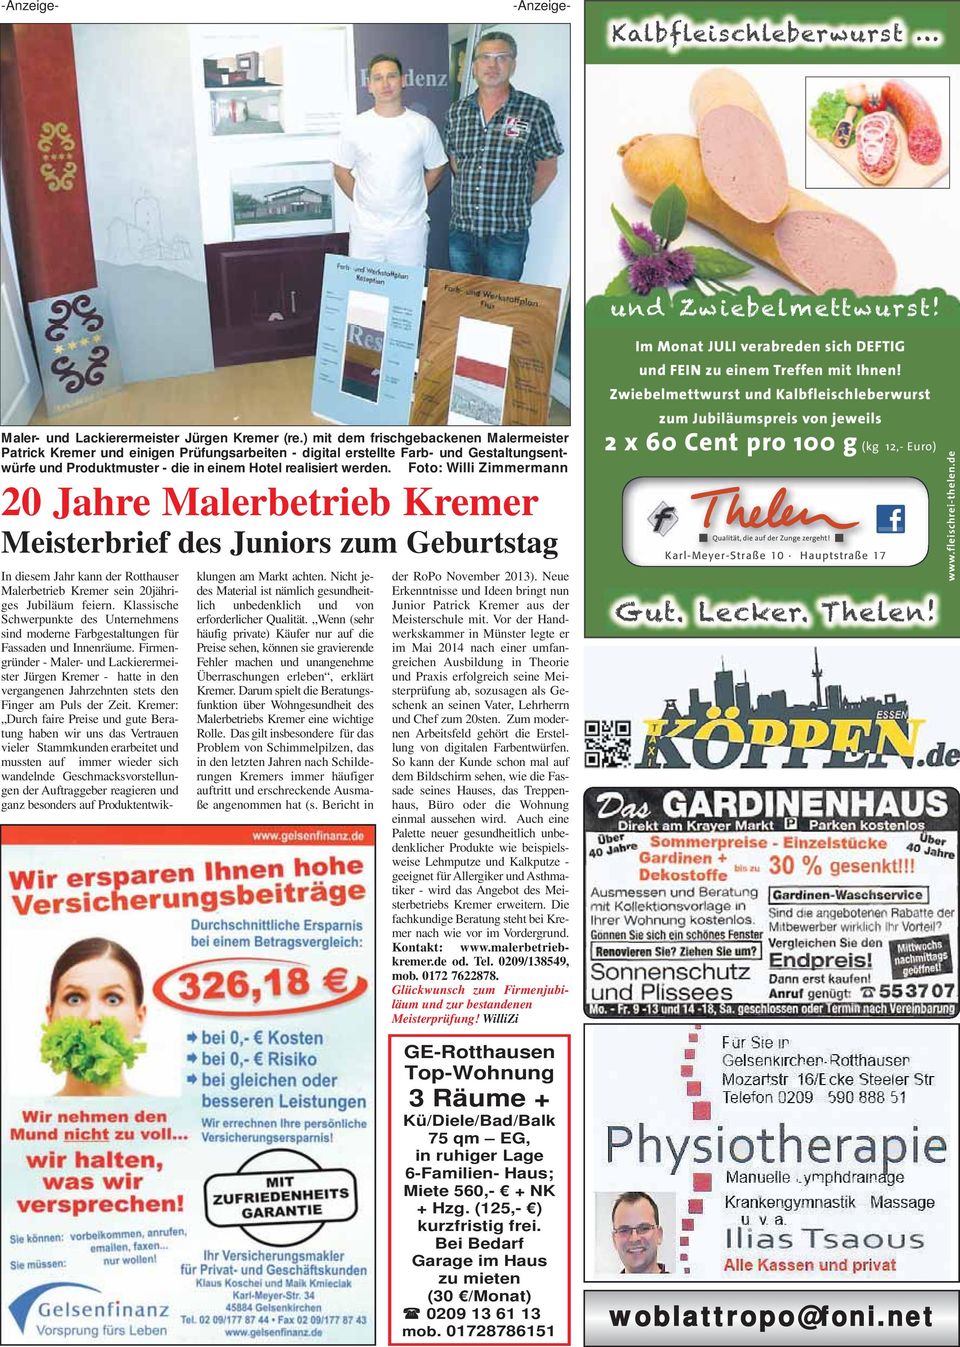 Foto: Willi Zimmermann 20 Jahre Malerbetrieb Kremer Meisterbrief des Juniors zum Geburtstag In diesem Jahr kann der Rotthauser Malerbetrieb Kremer sein 20jähriges Jubiläum feiern.